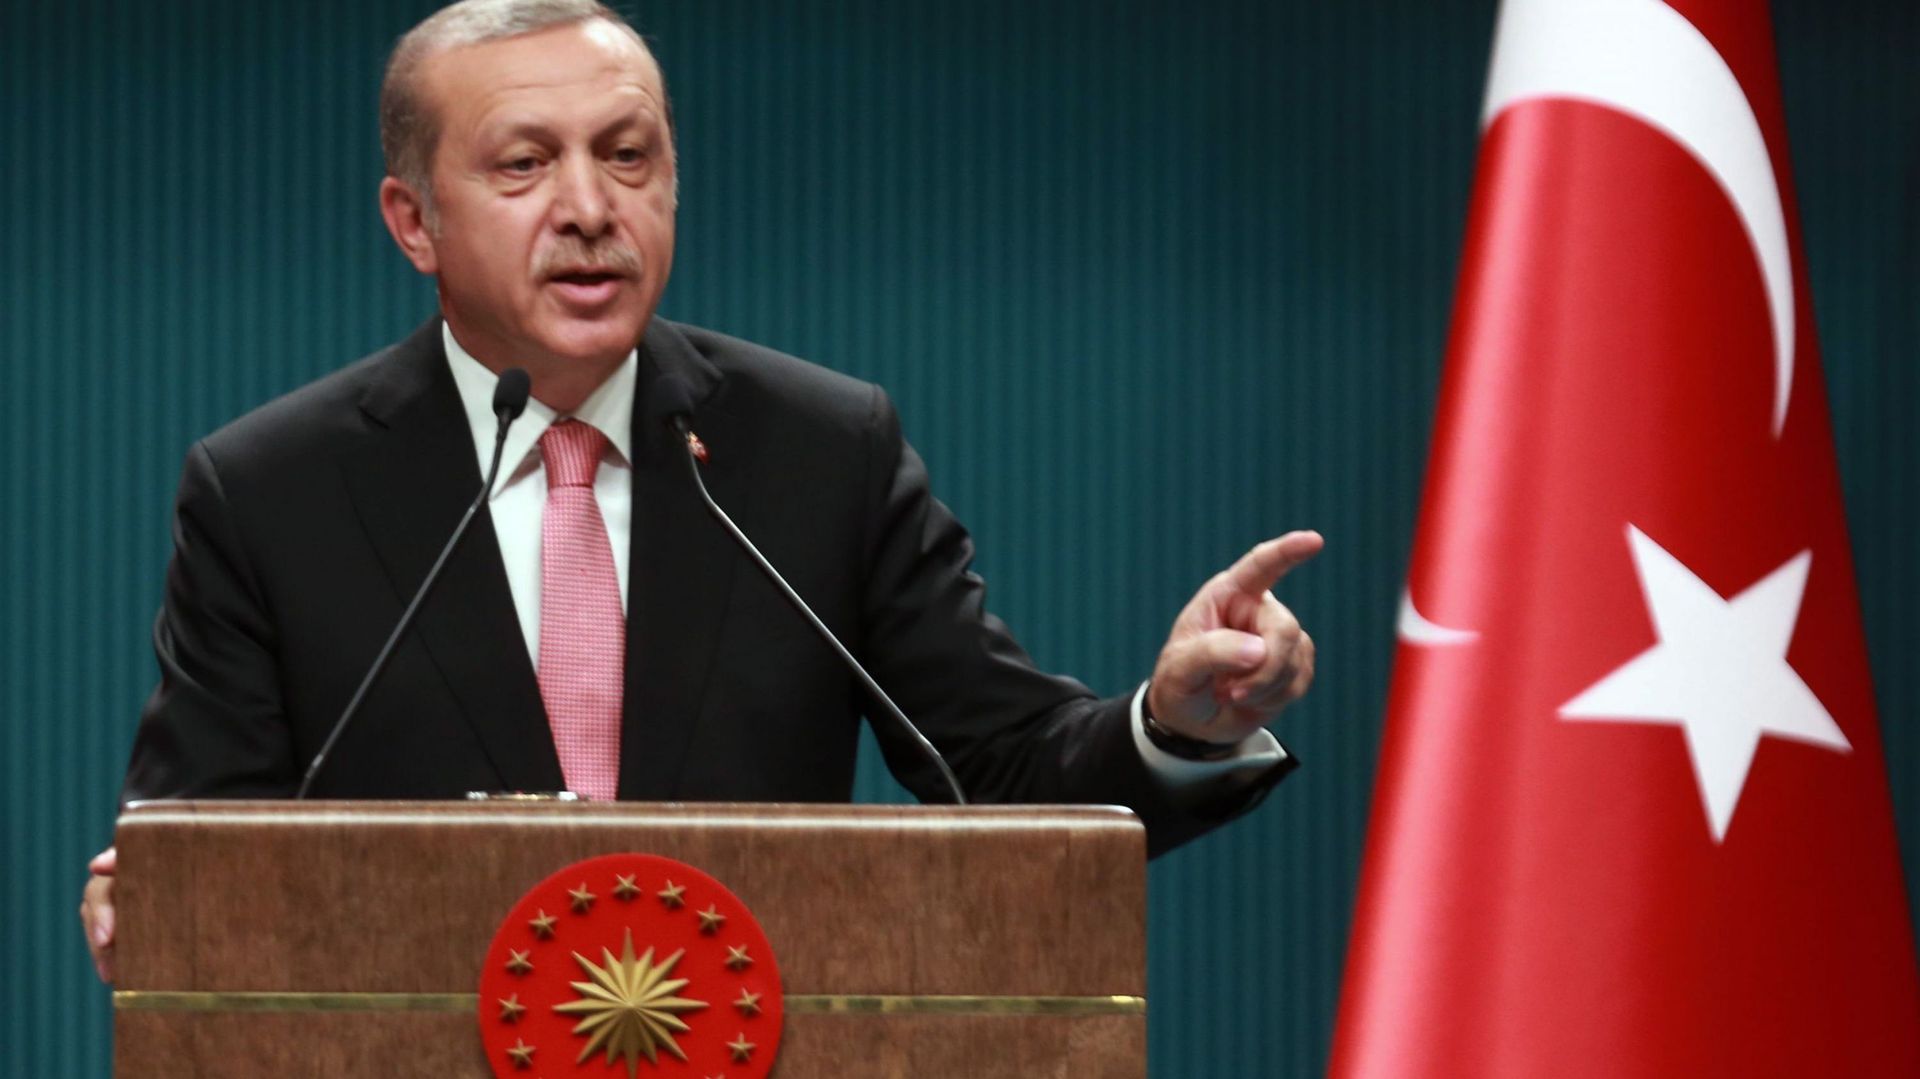 "Si mon peuple, mon pays, demande sans arrêt la peine de mort, si les représentants de mon peuple à l'assemblée disent oui, désolé, je dois respecter cette demande", a répondu M. Erdogan.